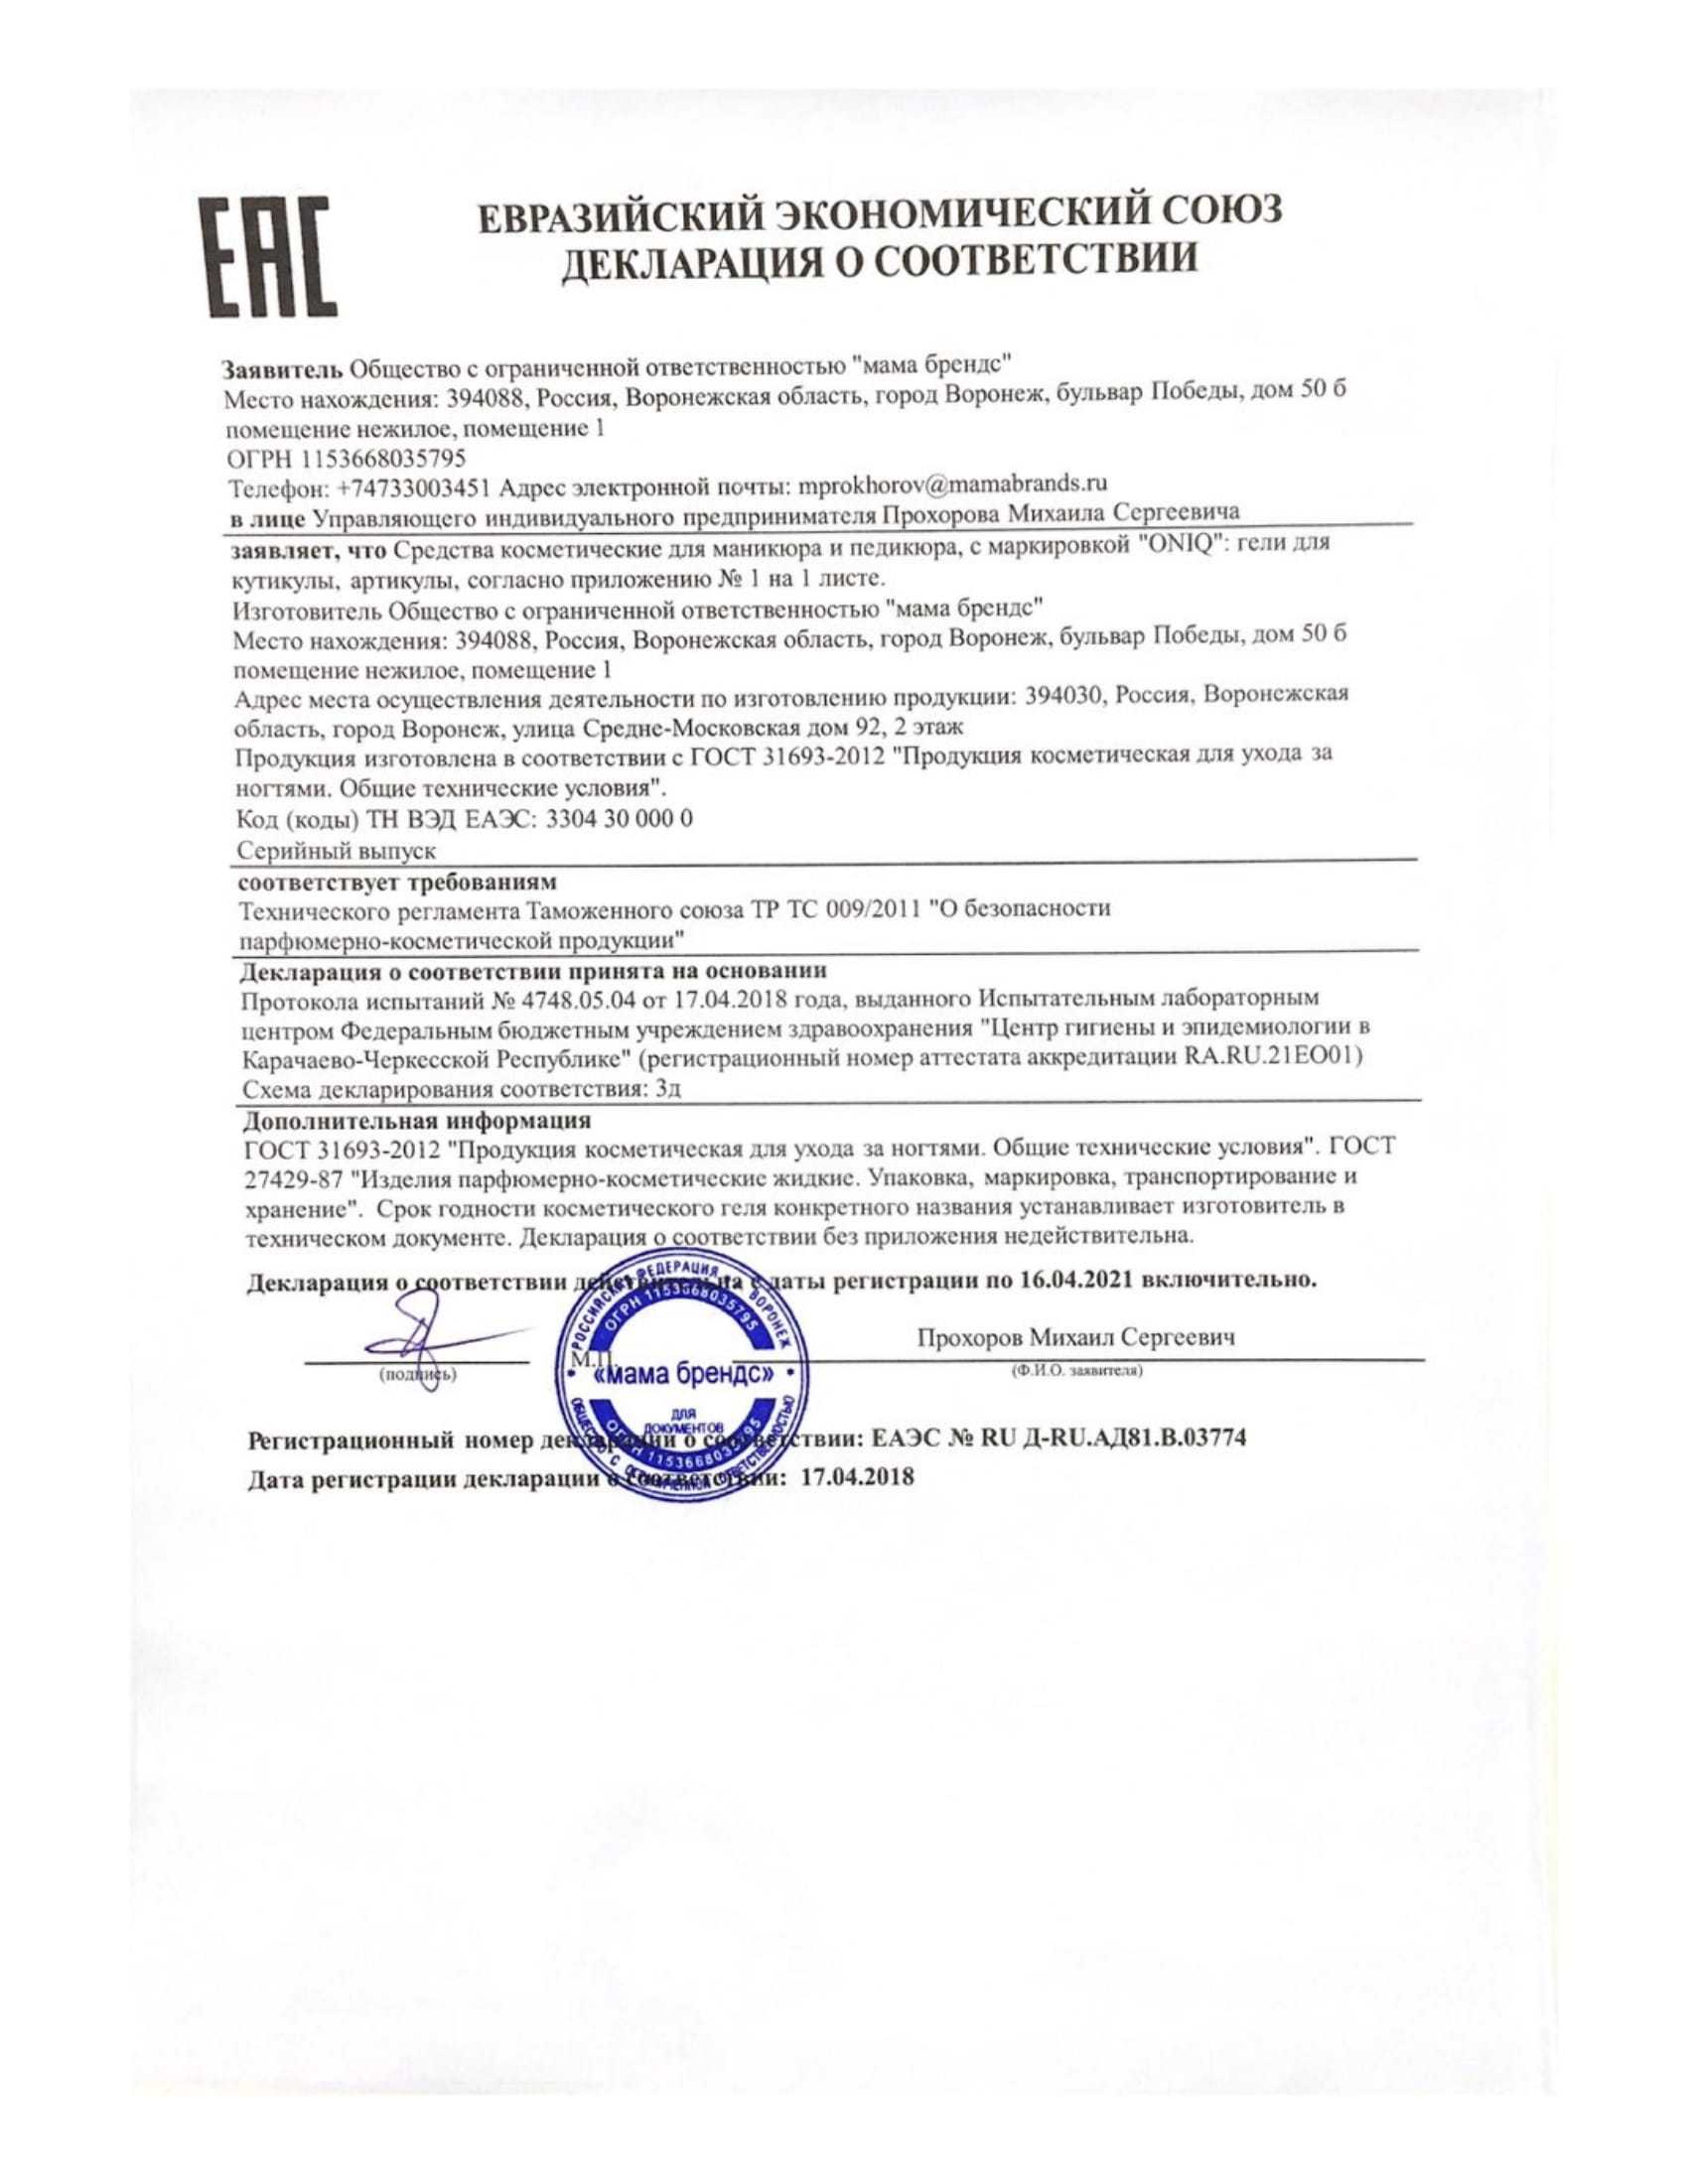 Декларация соответствия еаэс n ru д-cn.ра01.в.34296/22, от 25 января 2022 г.